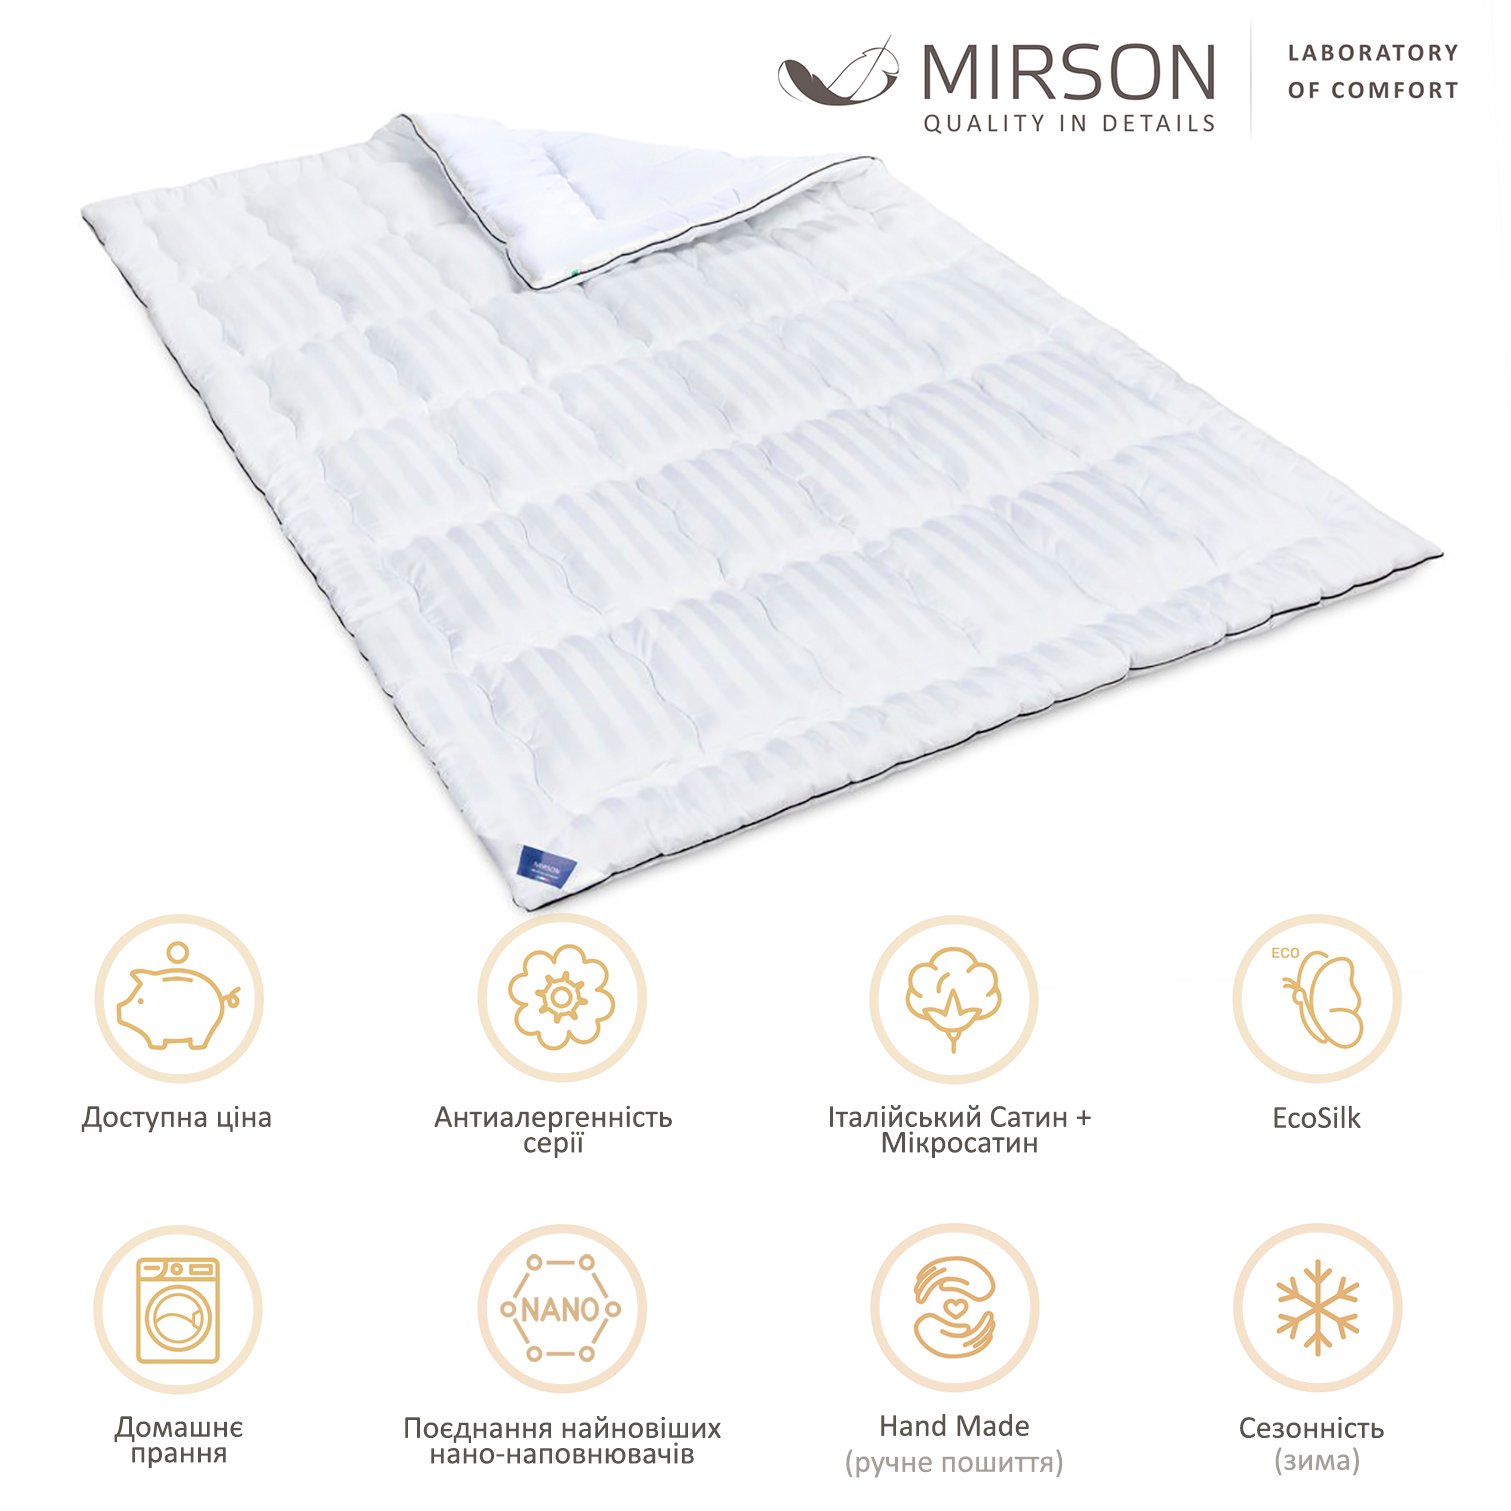 Одеяло антиаллергенное MirSon Royal Pearl Hand Made EcoSilk №0556, зимнее, 155x215 см, белое - фото 5